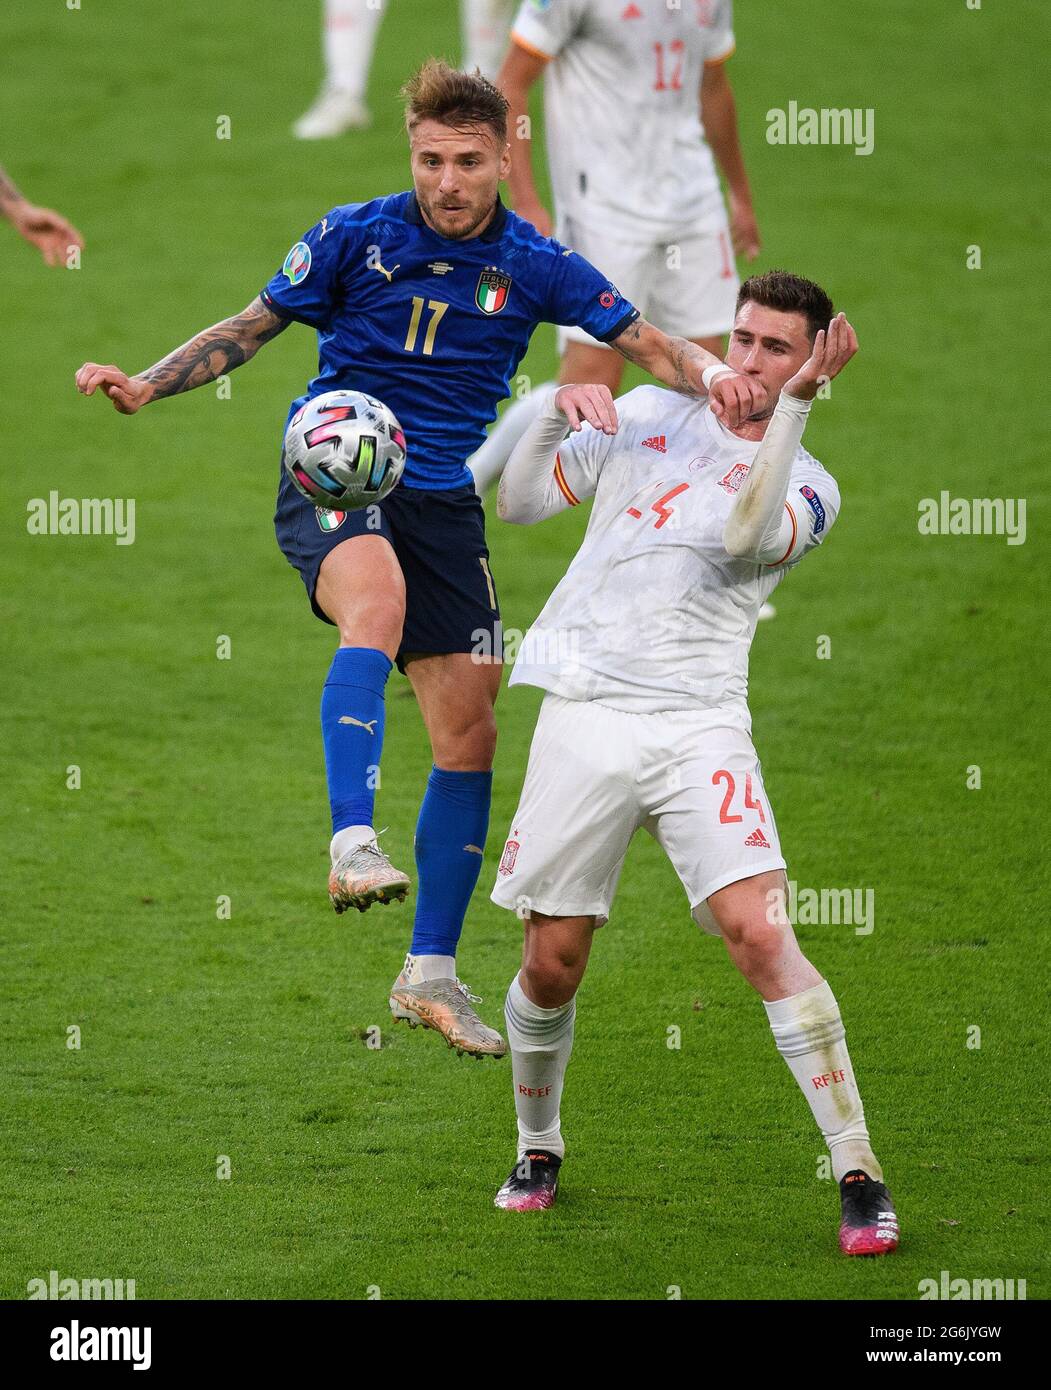 07. Juli 2021 - Italien gegen Spanien - UEFA Euro 2020 Halbfinale - Wembley - London Italiens Ciro-unbeweglich kämpft mit Aymeric Laporte Bildnachweis: © Mark Pain / Alamy Live News Stockfoto